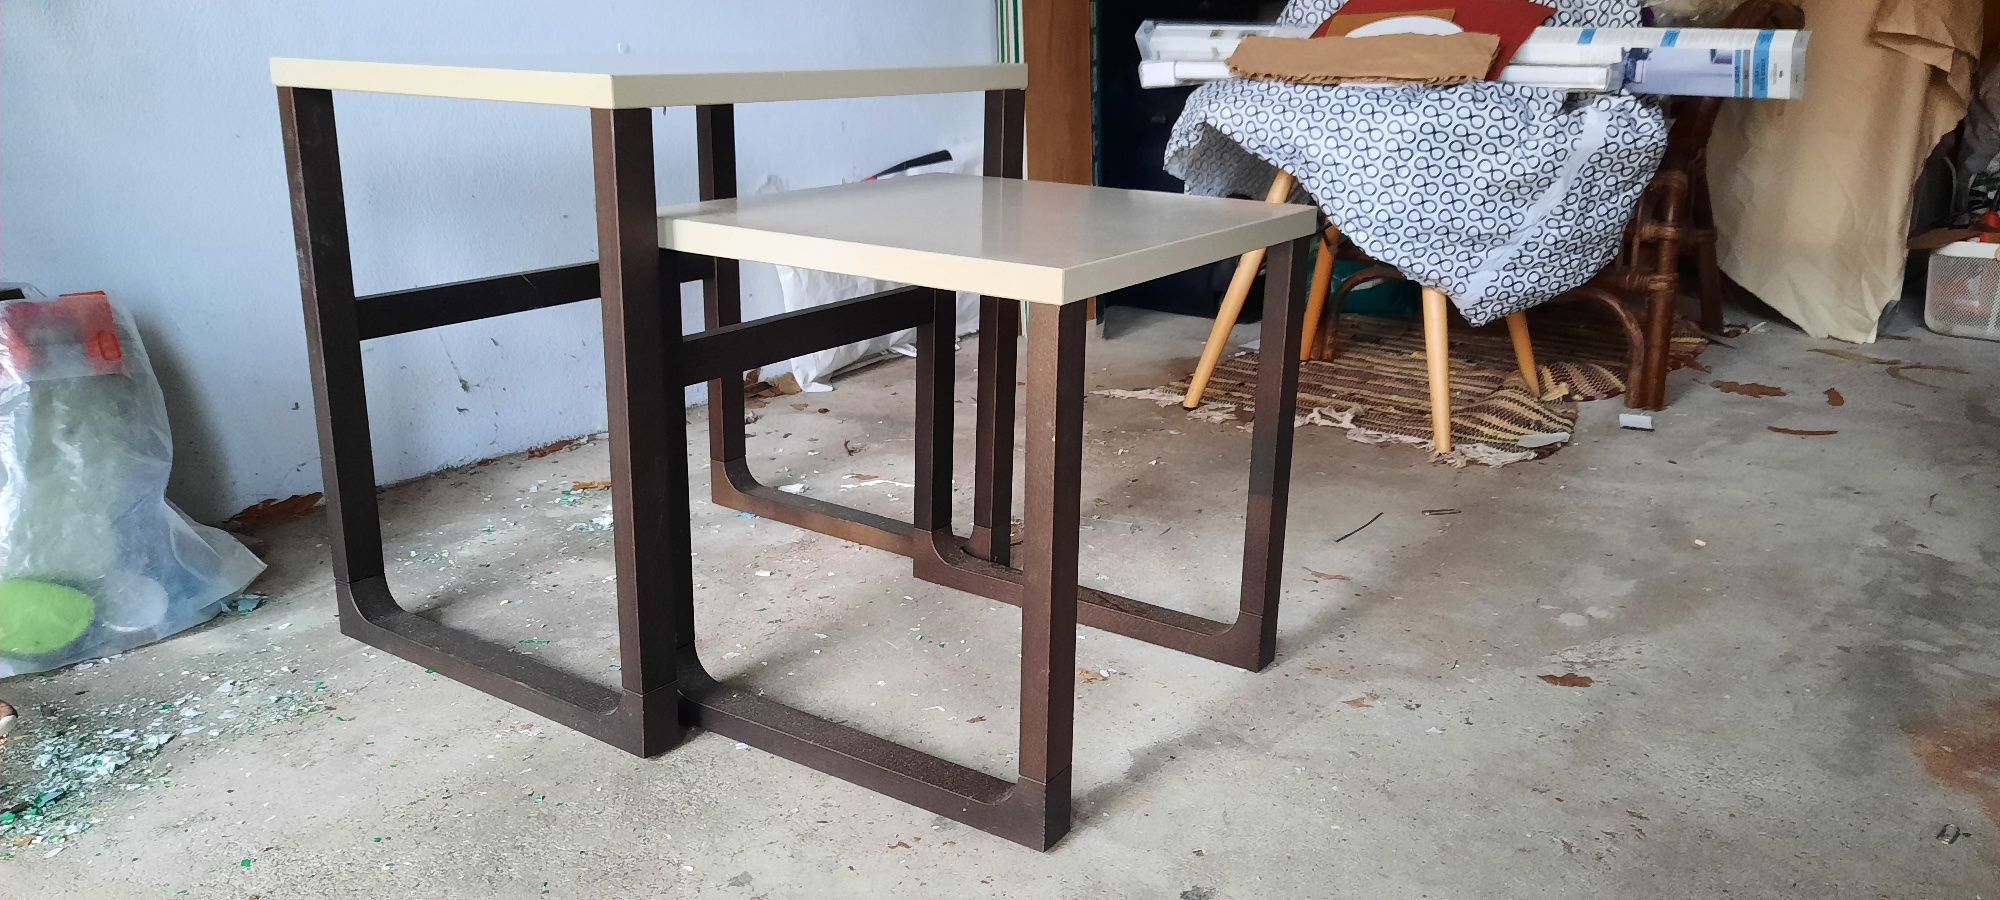 2 mesas de apoio IKEA